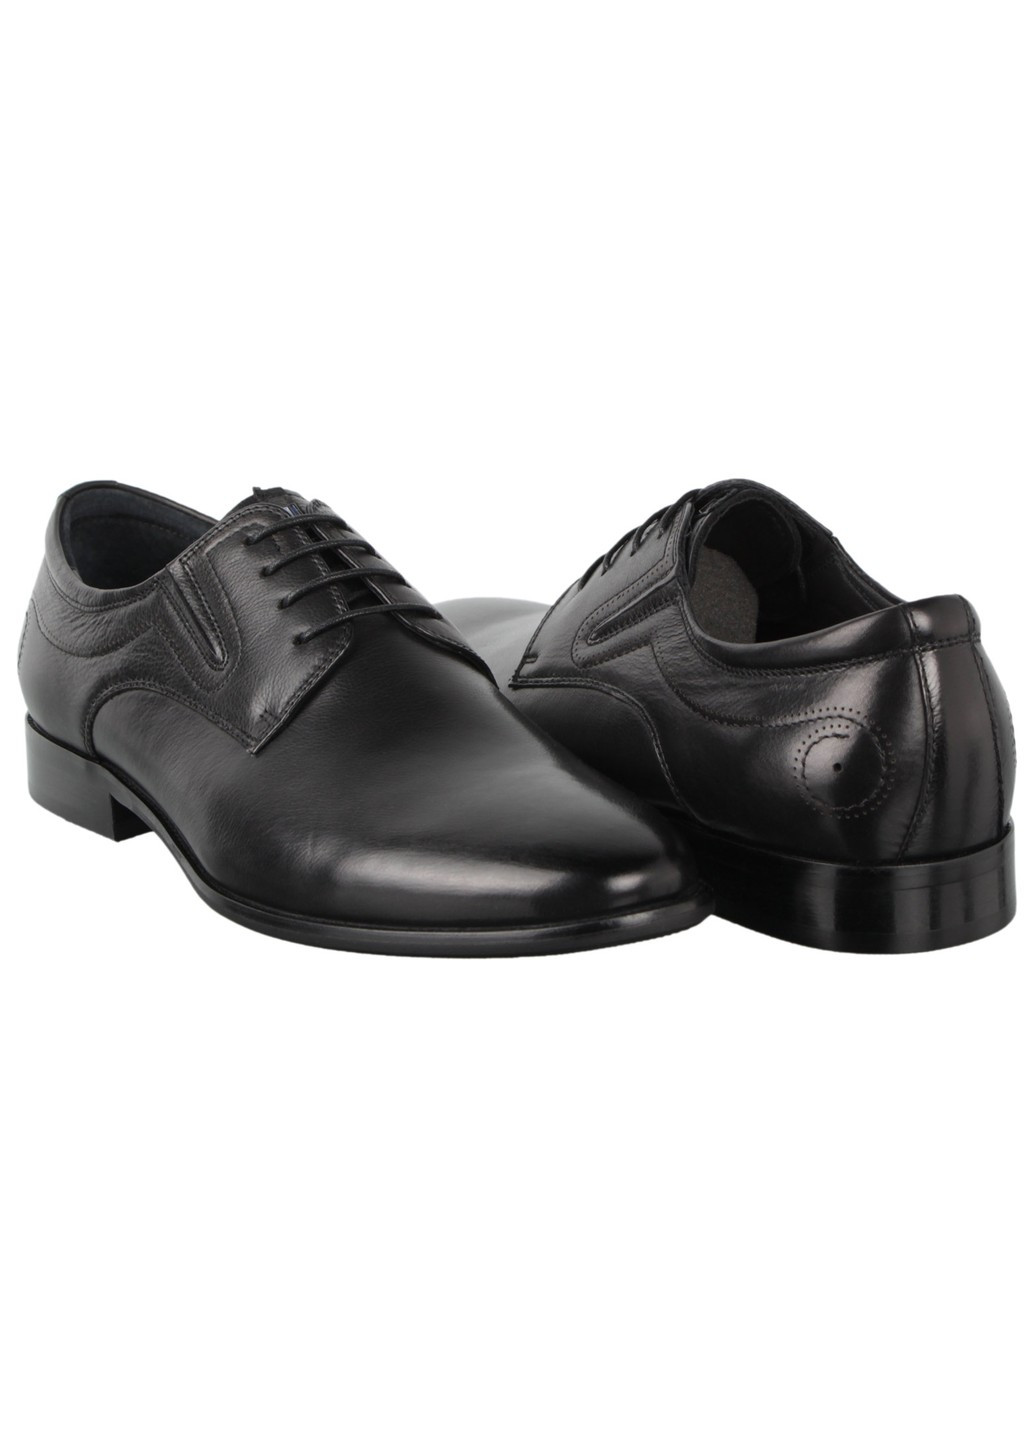 Черные мужские туфли классические 198368 Cosottinni на шнурках